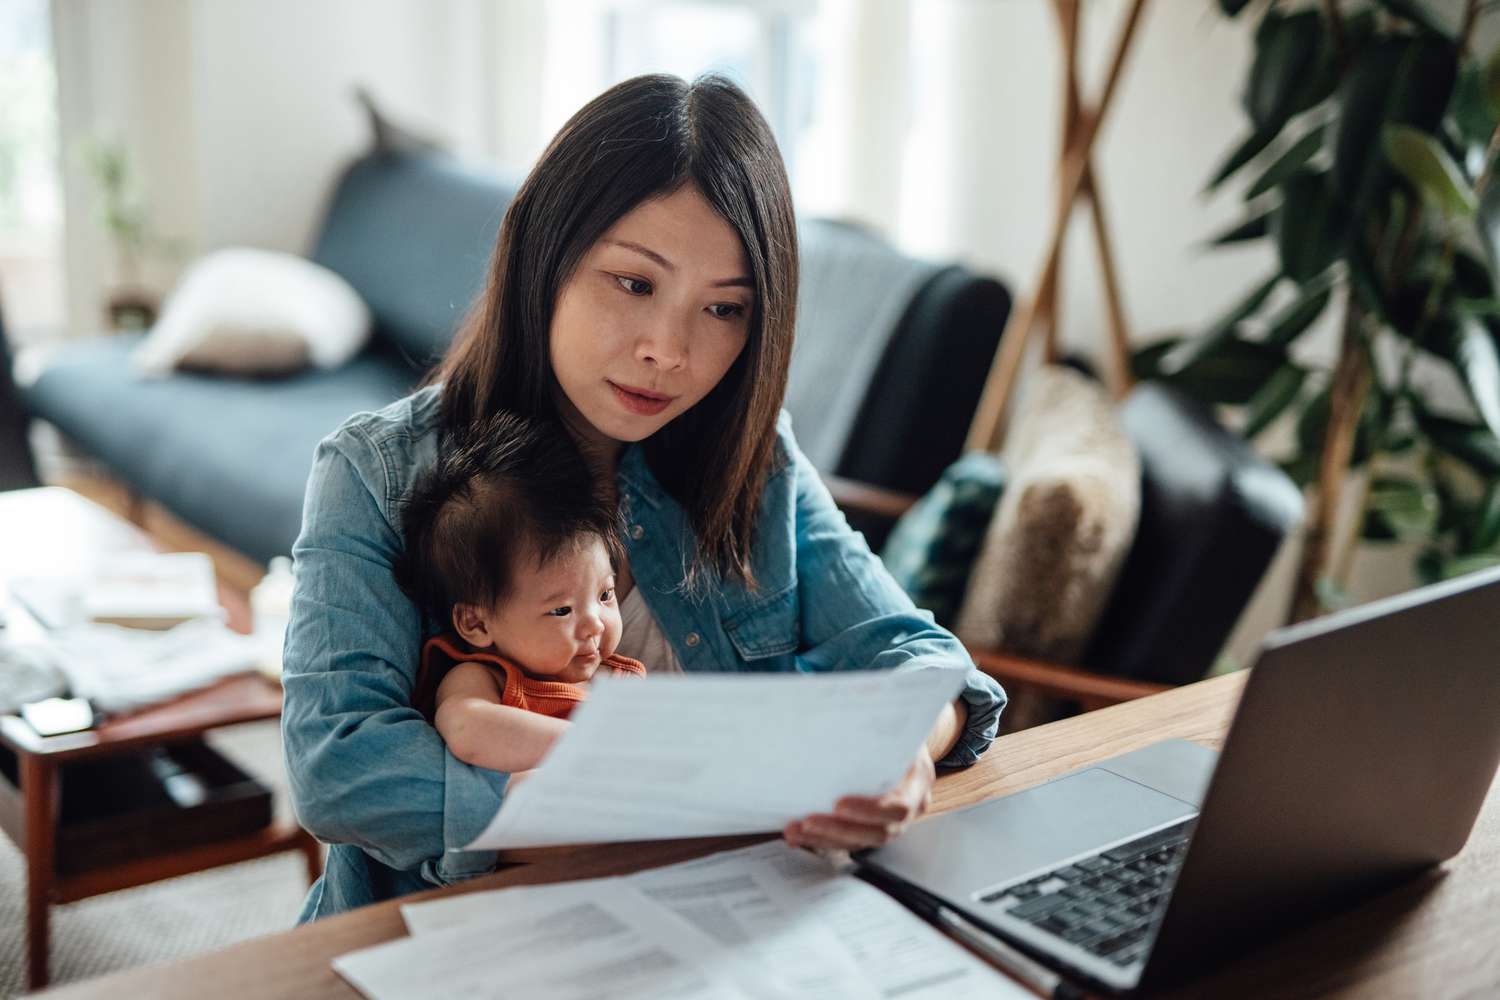 一名妇女抱着婴儿坐在办公桌前，面前是一台打开的笔记本电脑，她专注地看着手里的一份文件